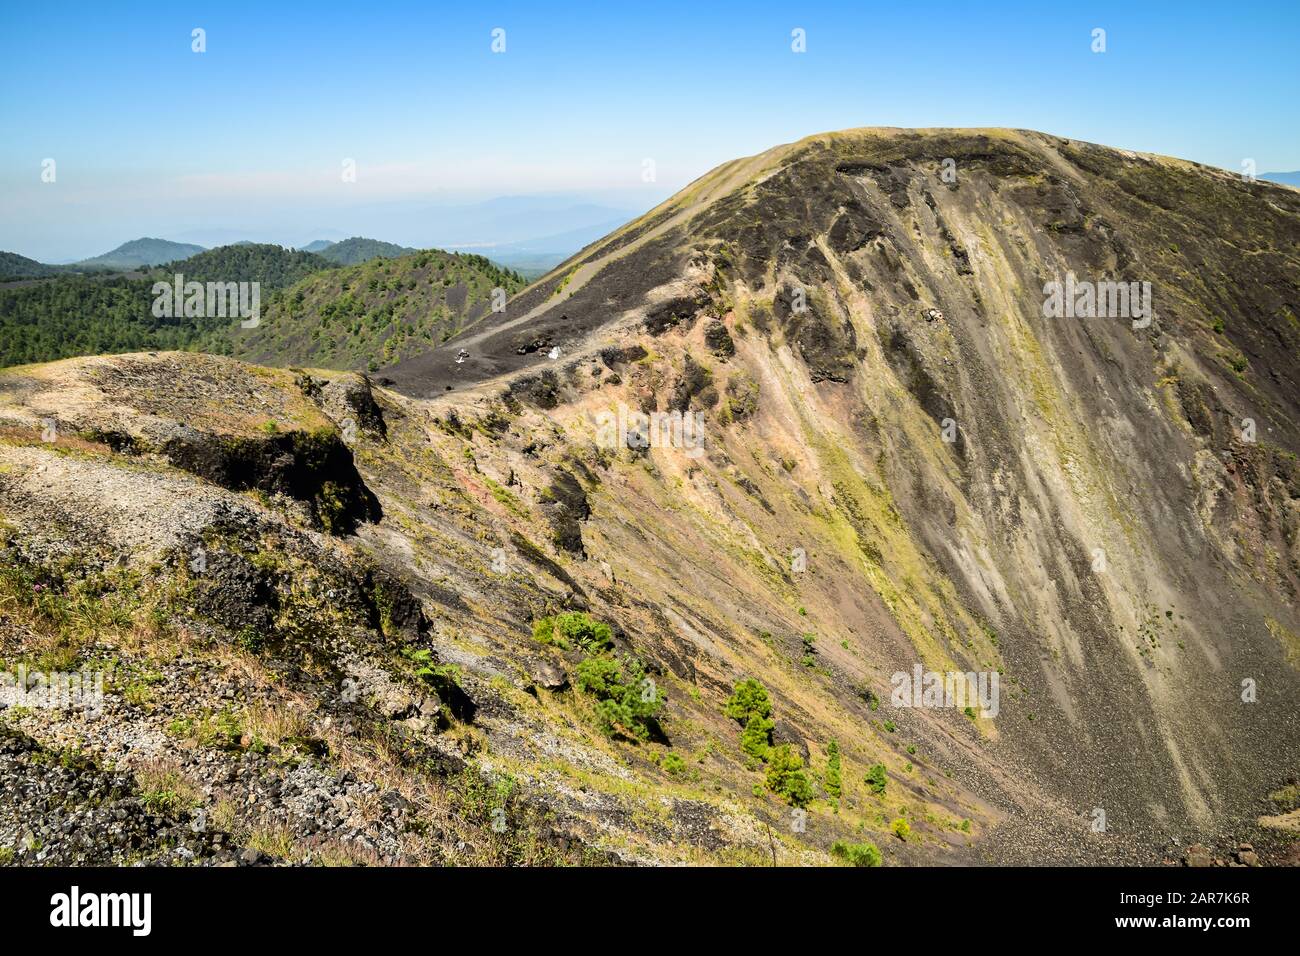 Ridge of a volcano caldera, Paricutin, Mexico Stock Photo